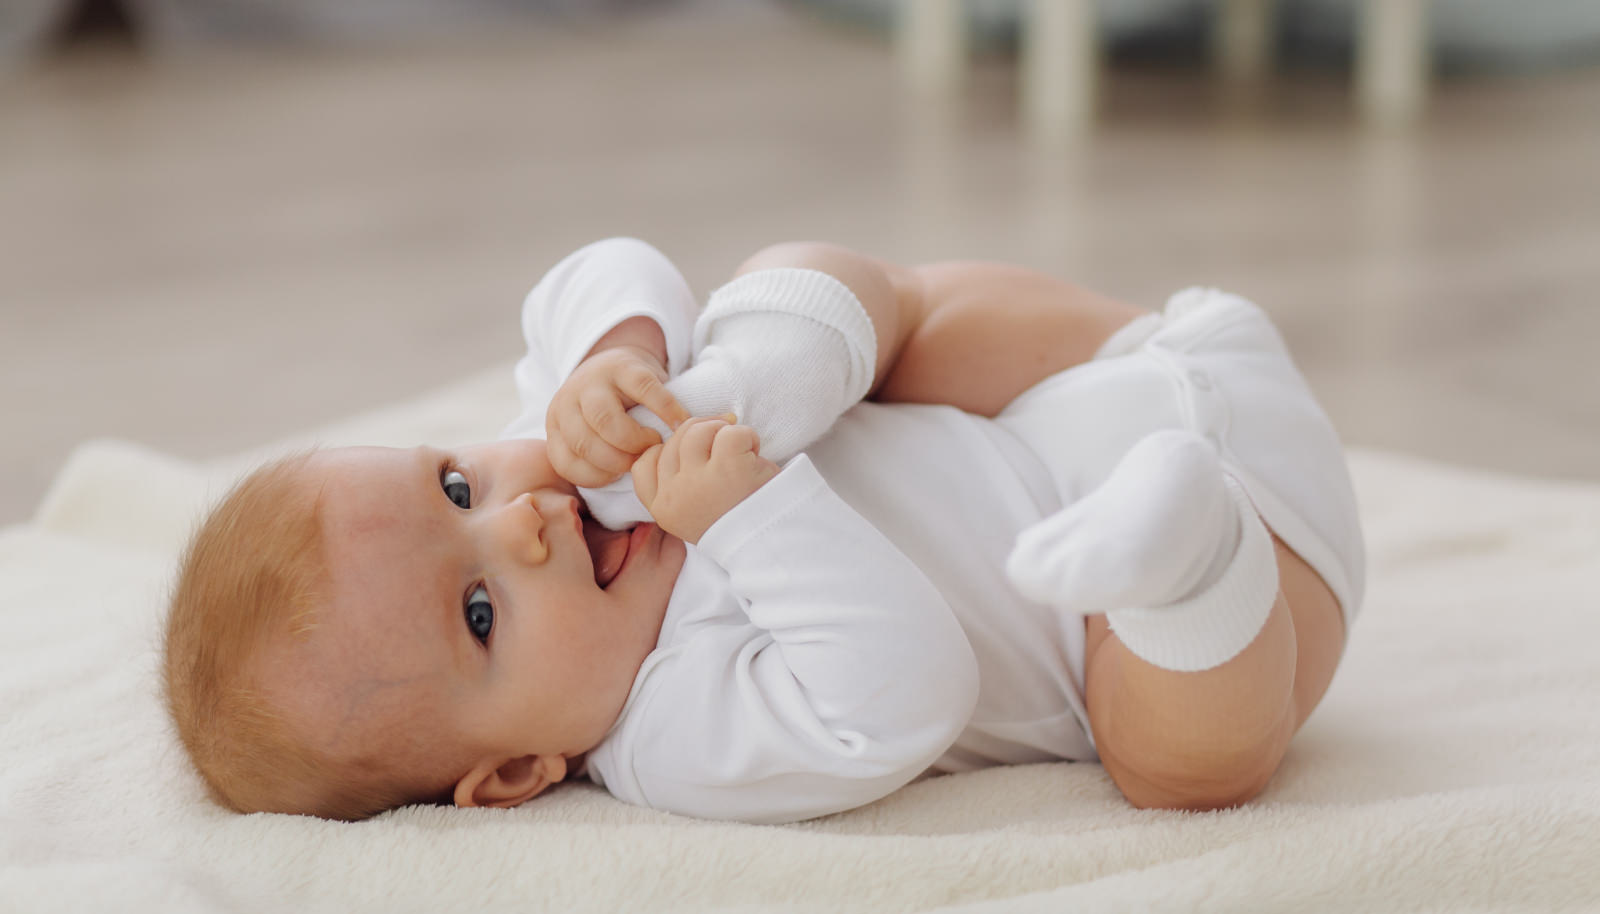 Dohrana bebe - vodič kroz najčešće nedoumice